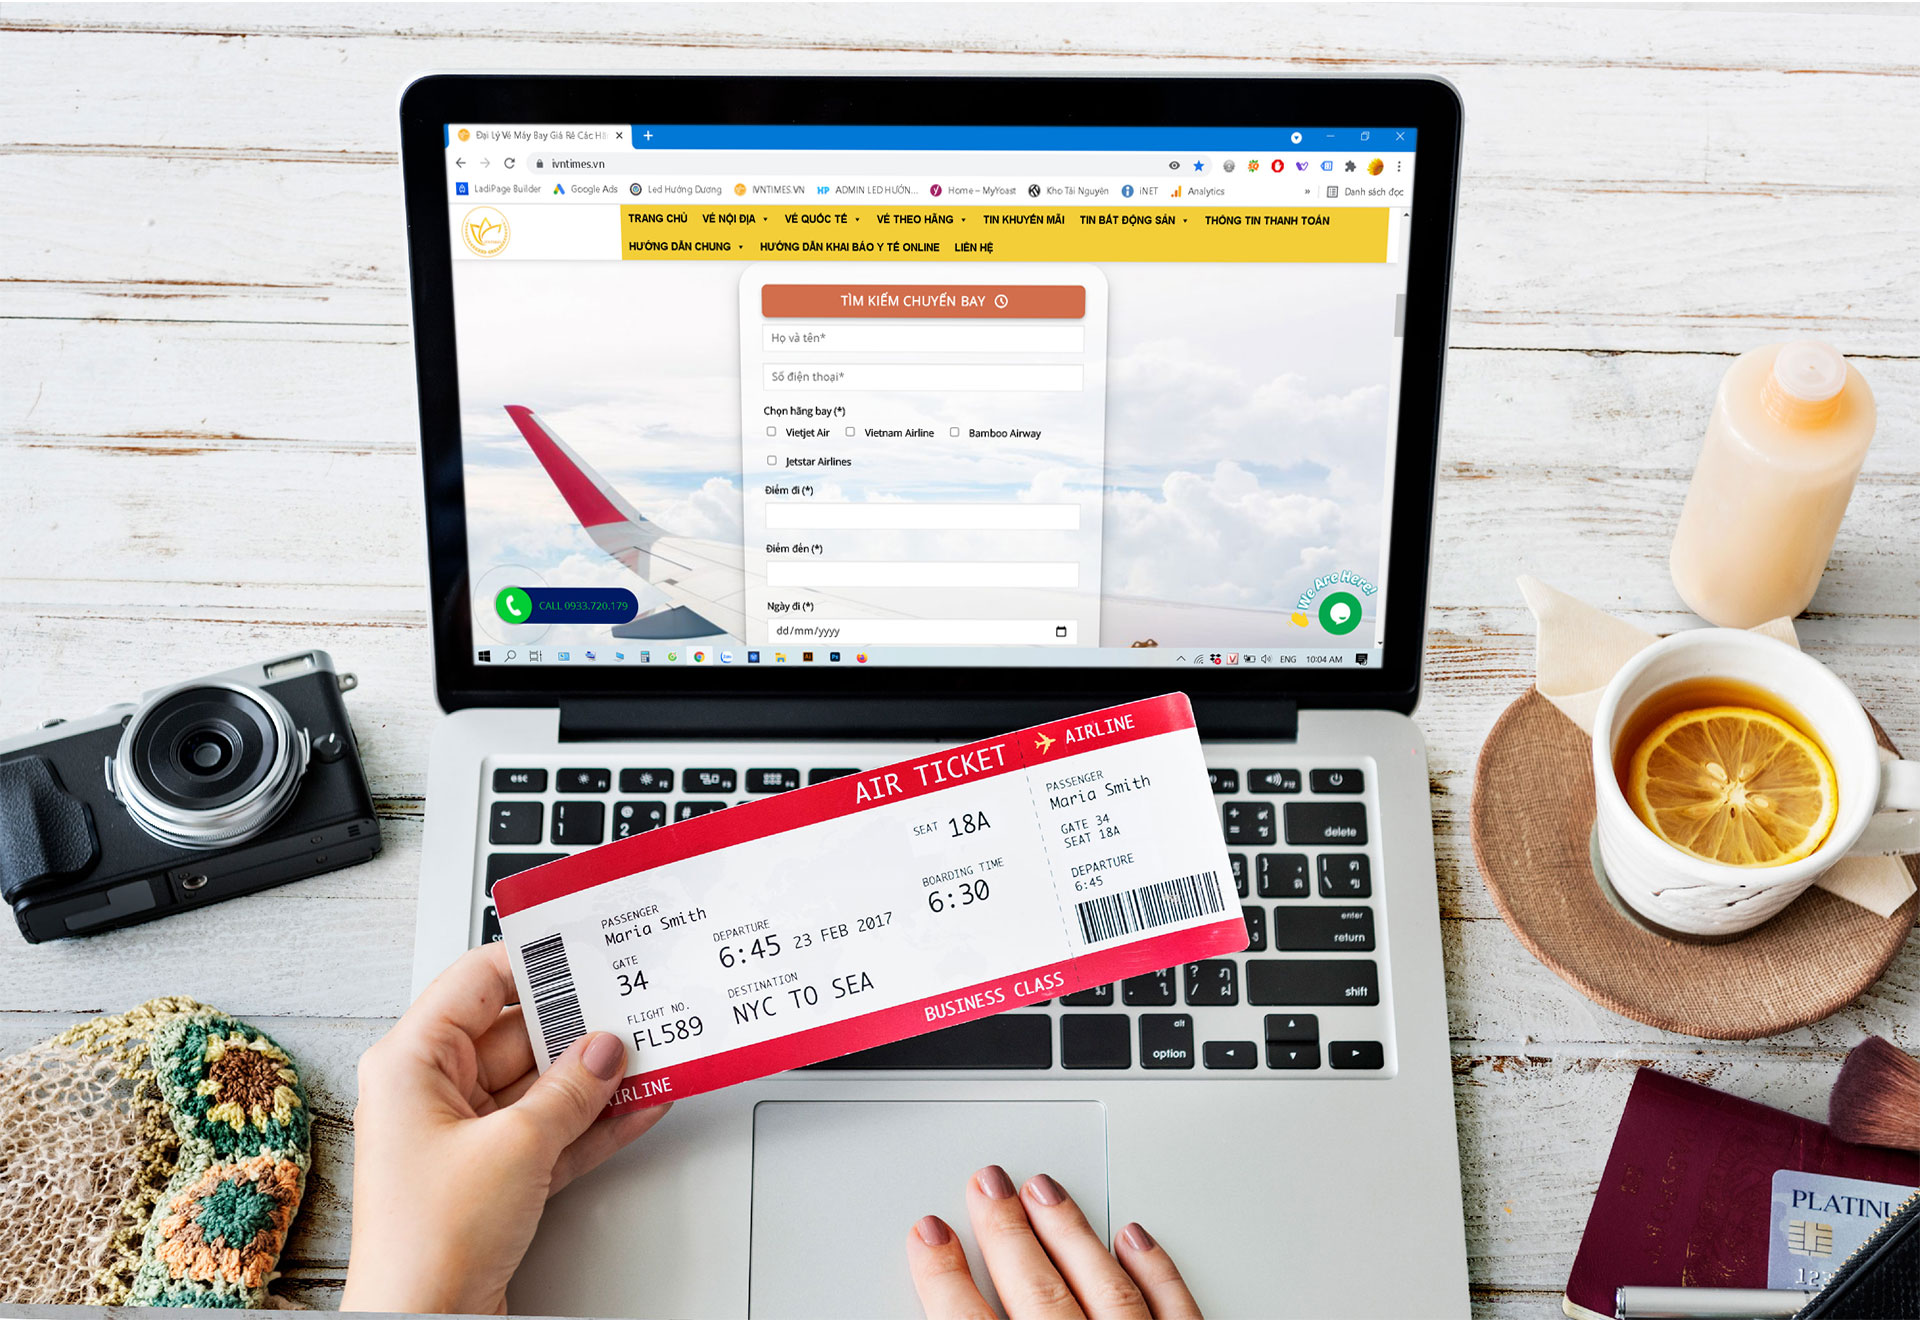 Ra Tết lên kế hoạch du lịch: Tư vấn cho bạn nên mua vé máy bay qua đại lý hay tự đặt trên mạng sẽ tốt hơn?  - Ảnh 3.